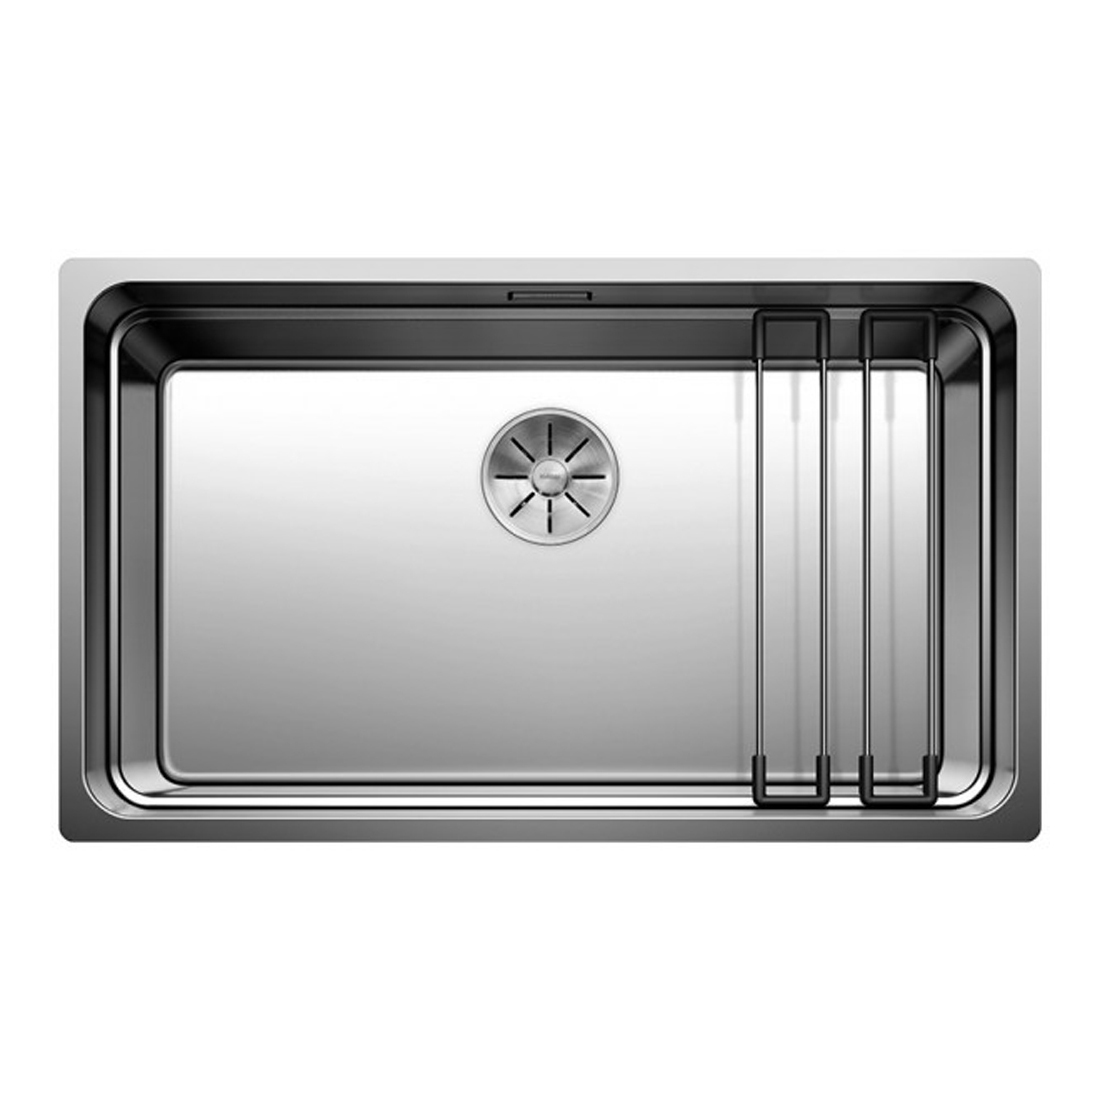 Кухонная мойка Blanco Etagon 700-U зеркальная полировка кухонная мойка blanco etagon 700 u зеркальная полировка